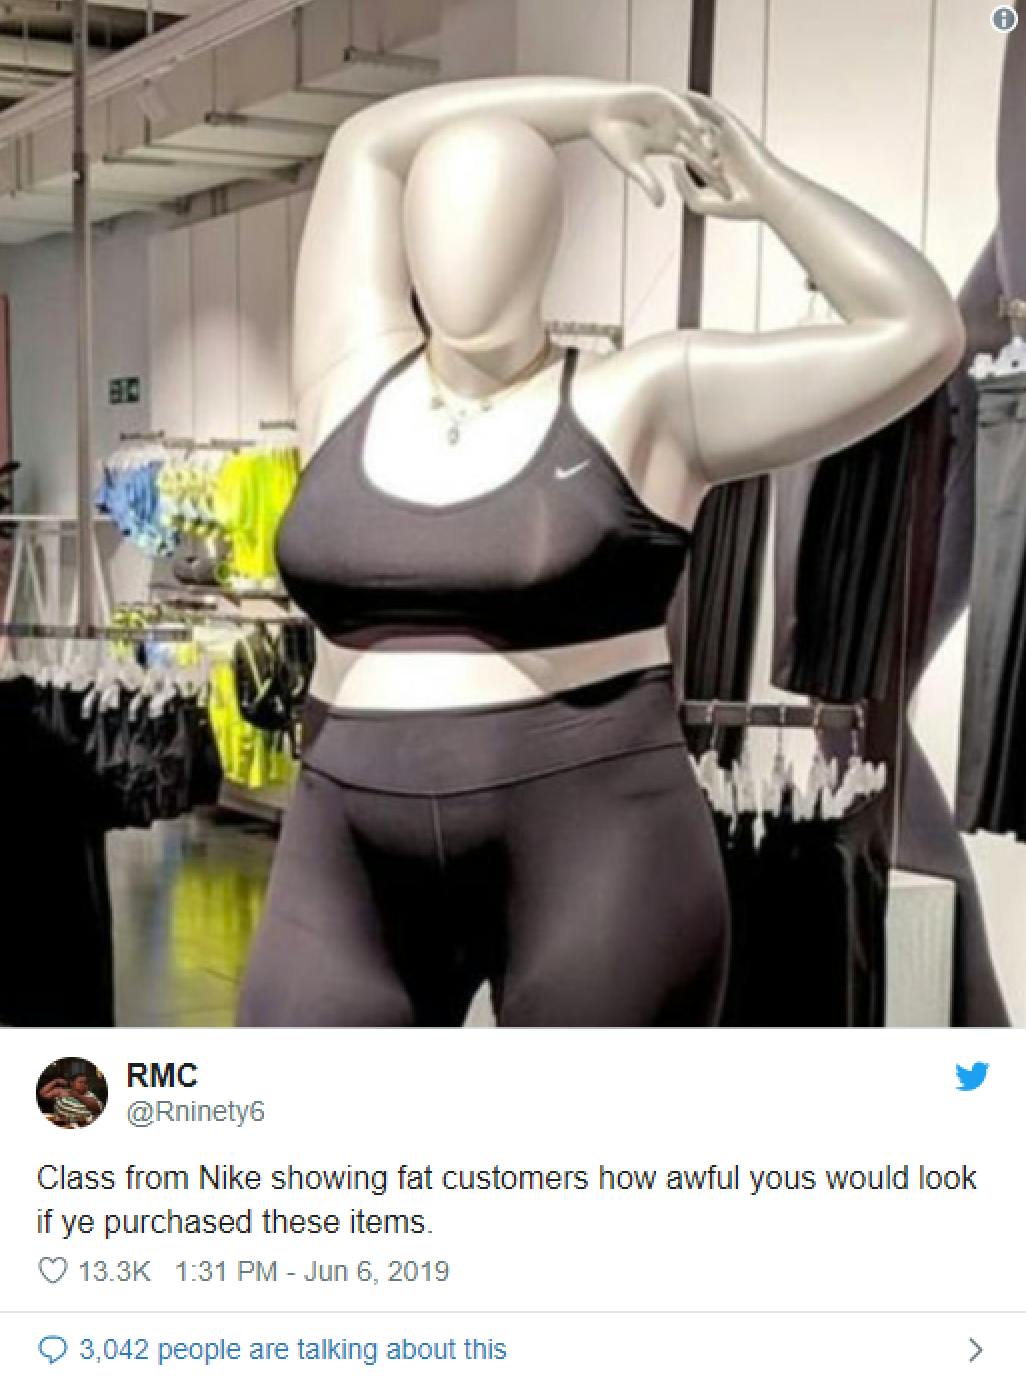 nike mannequin body shamed